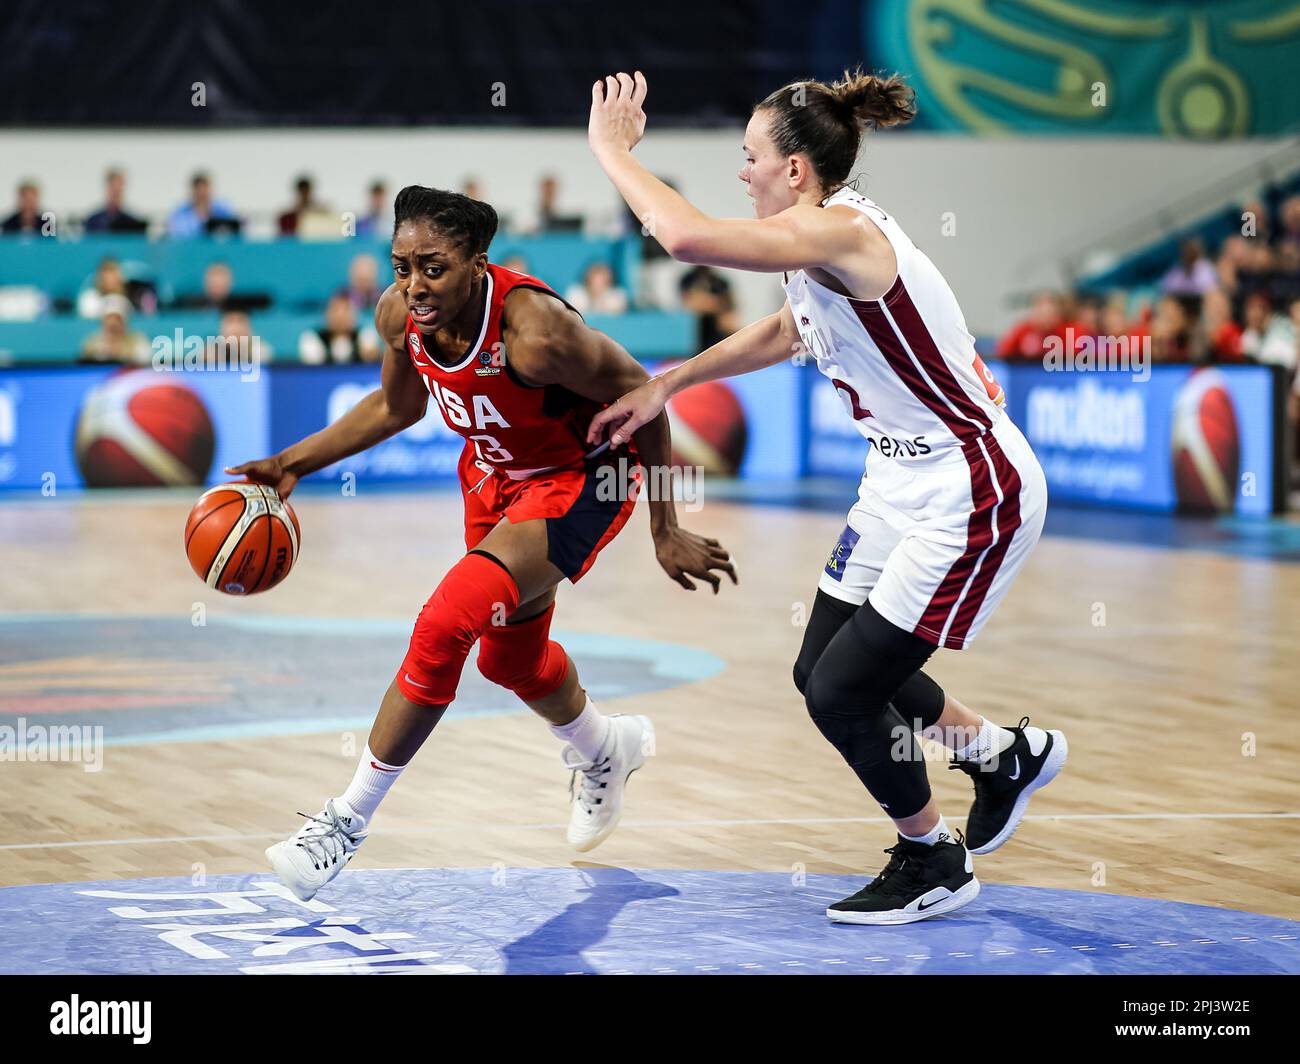 Espagne, Ténérife, 25 septembre 2018: Nneka Ogwumike, joueur américain de basket-ball, en action lors de la coupe du monde de basket-ball féminin de la FIBA Banque D'Images